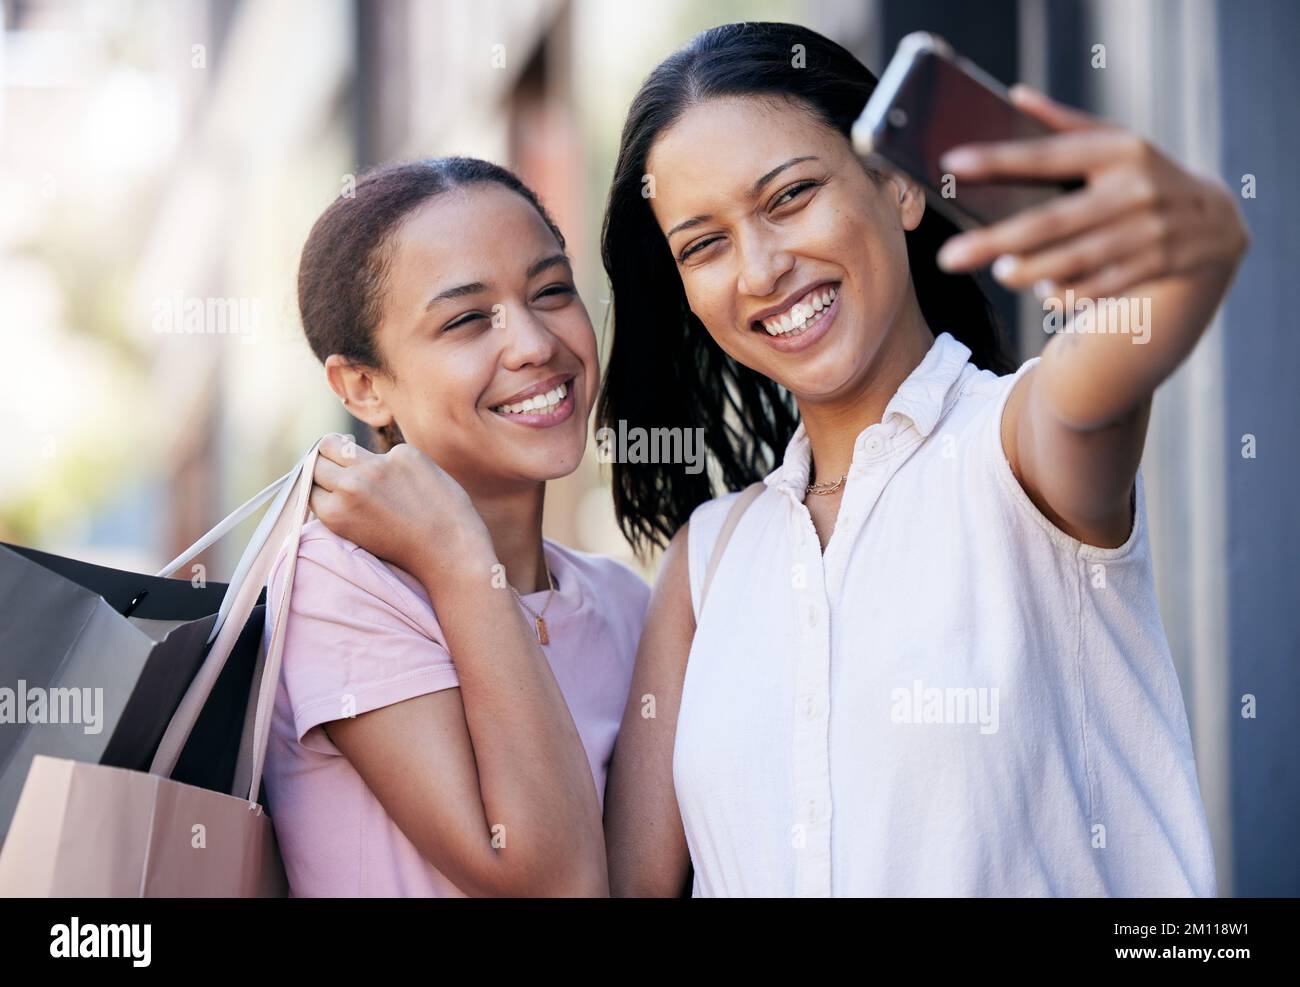 Amici, sorridi e fai un selfie per strada per i social media dopo aver fatto acquisti di abbigliamento, legami e nuove tendenze della moda. Nero Foto Stock